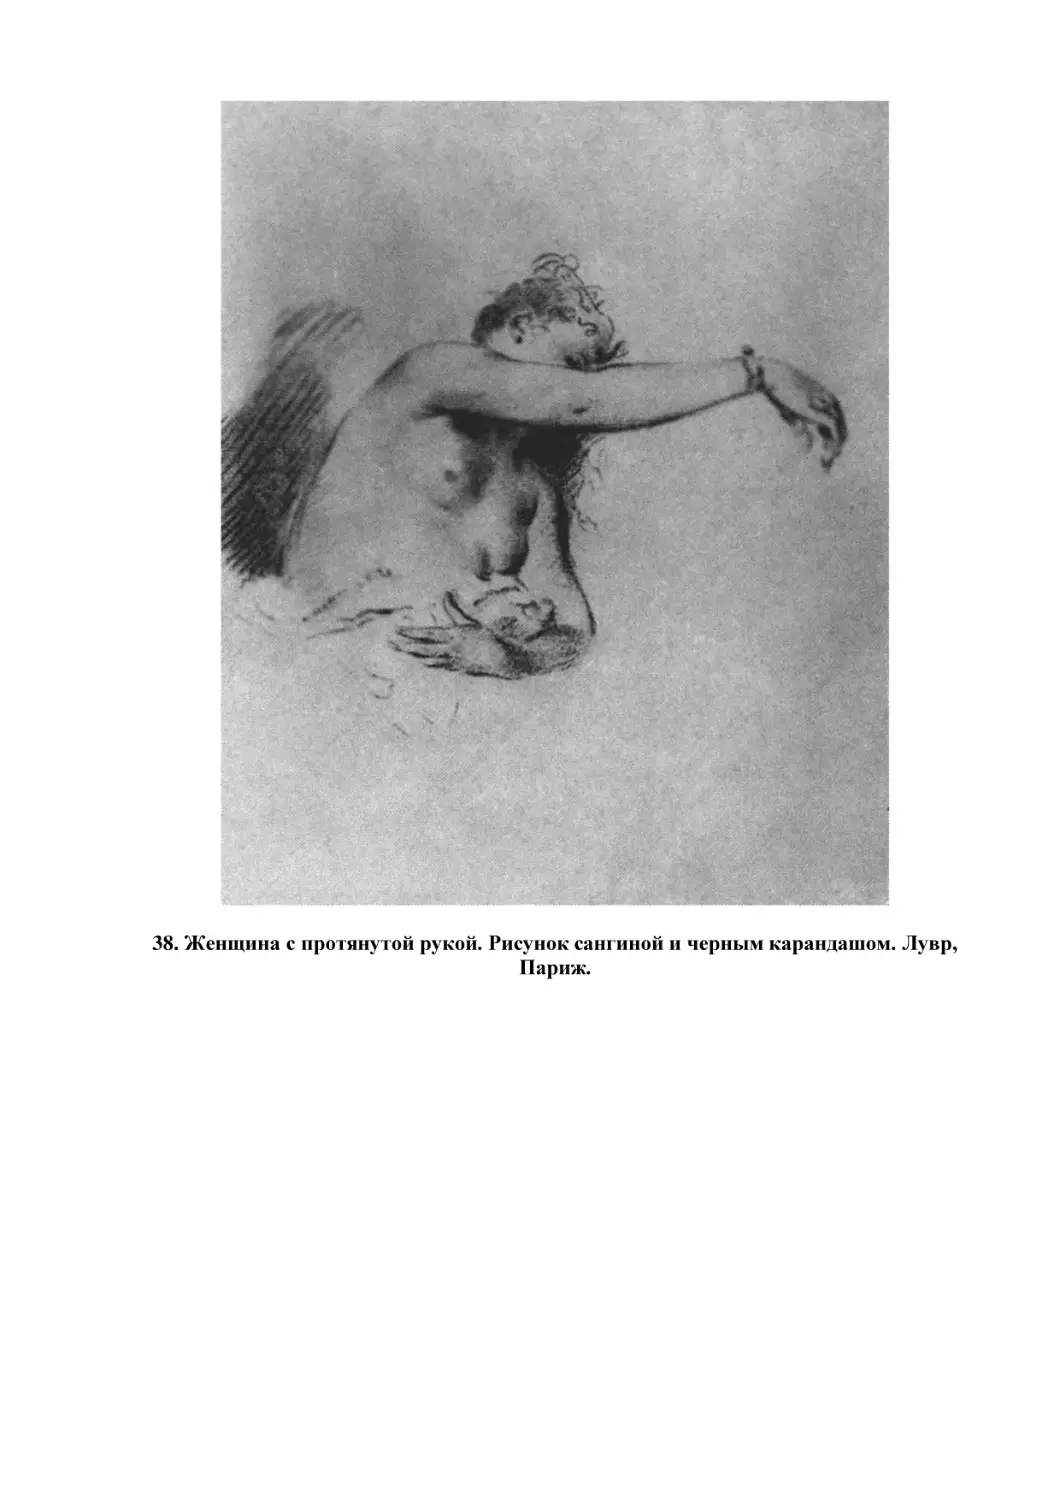 38. Женщина с протянутой рукой. Рисунок сангиной и черным карандашом. Лувр, Париж.